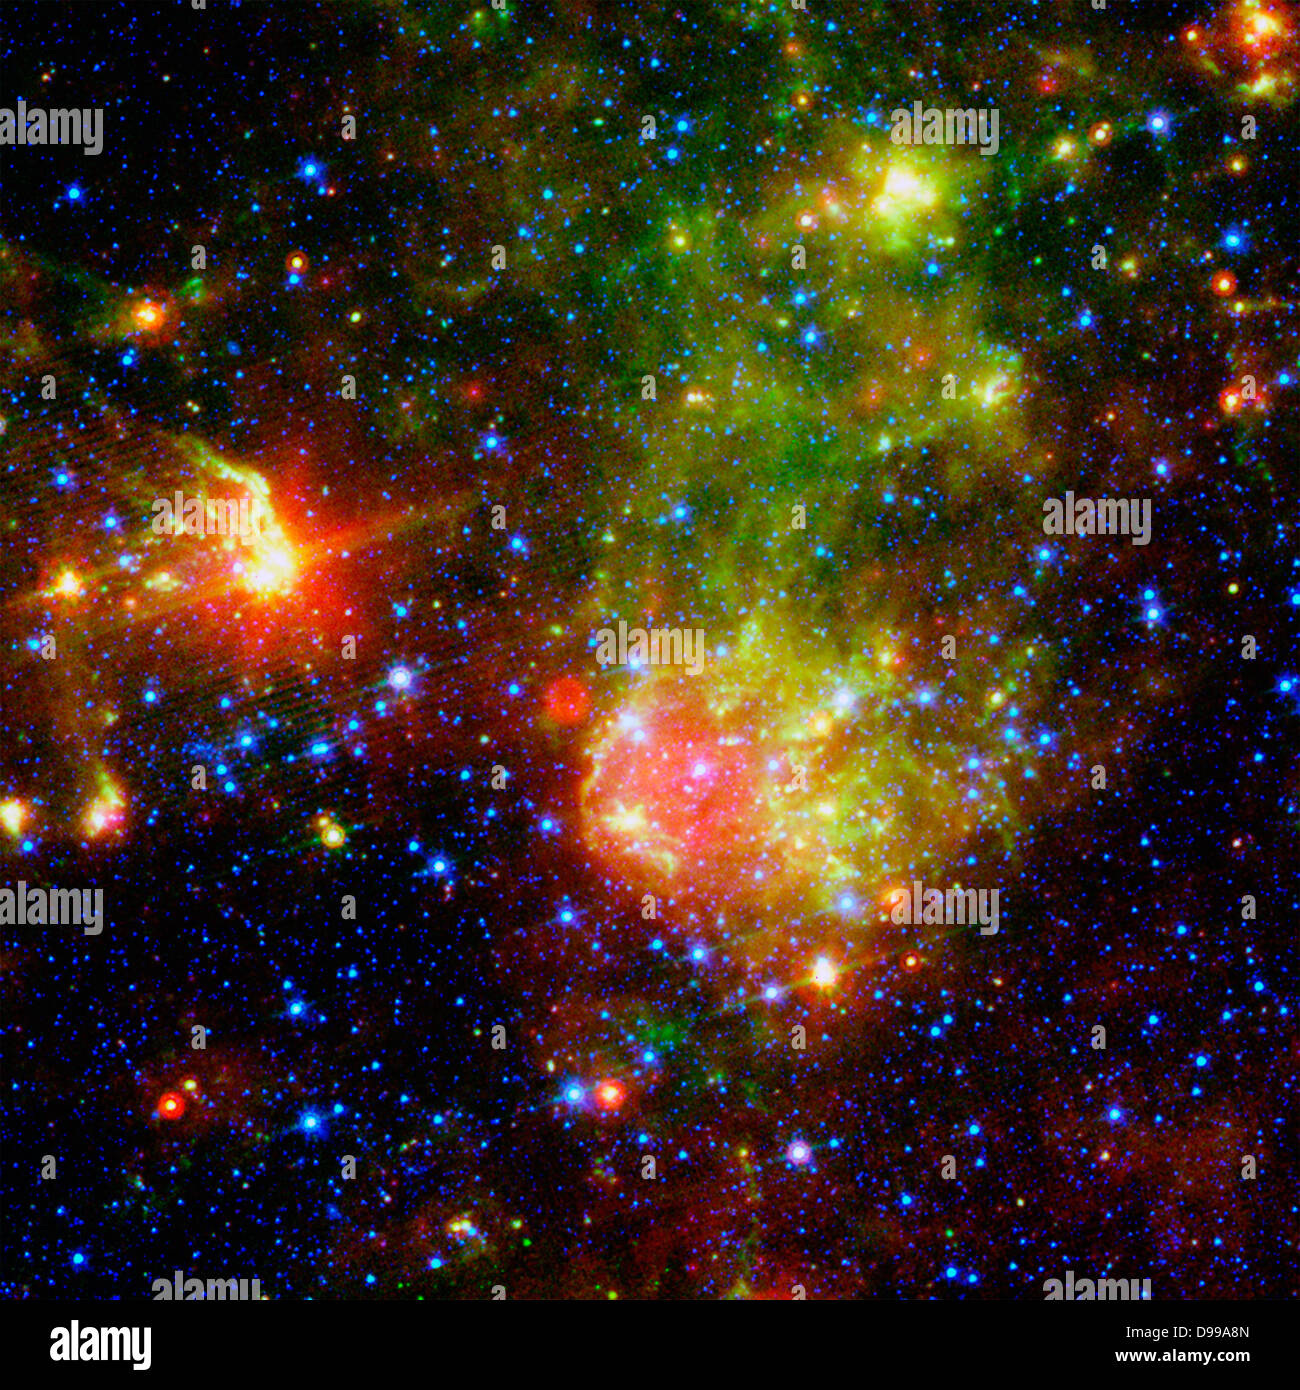 La supernova resto 1E0102.2-7219 siede accanto a la nebulosa N76 in una luminosa stella-regione di formatura del piccolo Magellanic Cloud, un satellite galaxy per la nostra Via Lattea si trova circa 200.000 anni luce dalla Terra. Telescopio Spaziale Hubble,telescopio spaziale Spitzer,Chandra X-Ray Telescope. Foto Stock